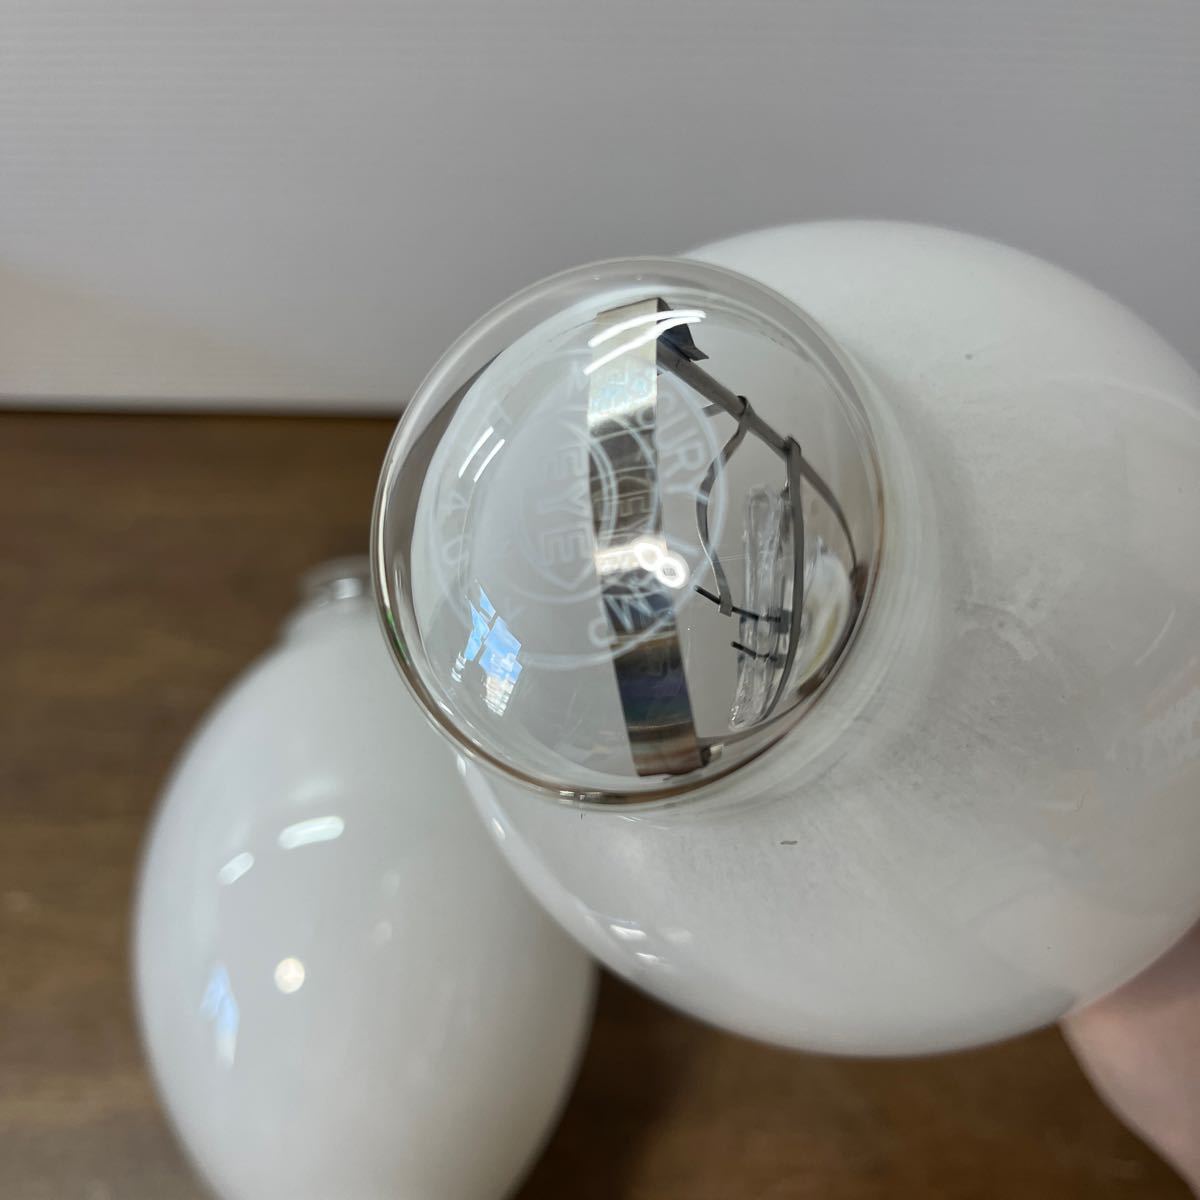  скала мыс вода серебряный лампа HF300X совместно 2 шт. комплект лампа лампа вода серебряный лампа 300W (d1